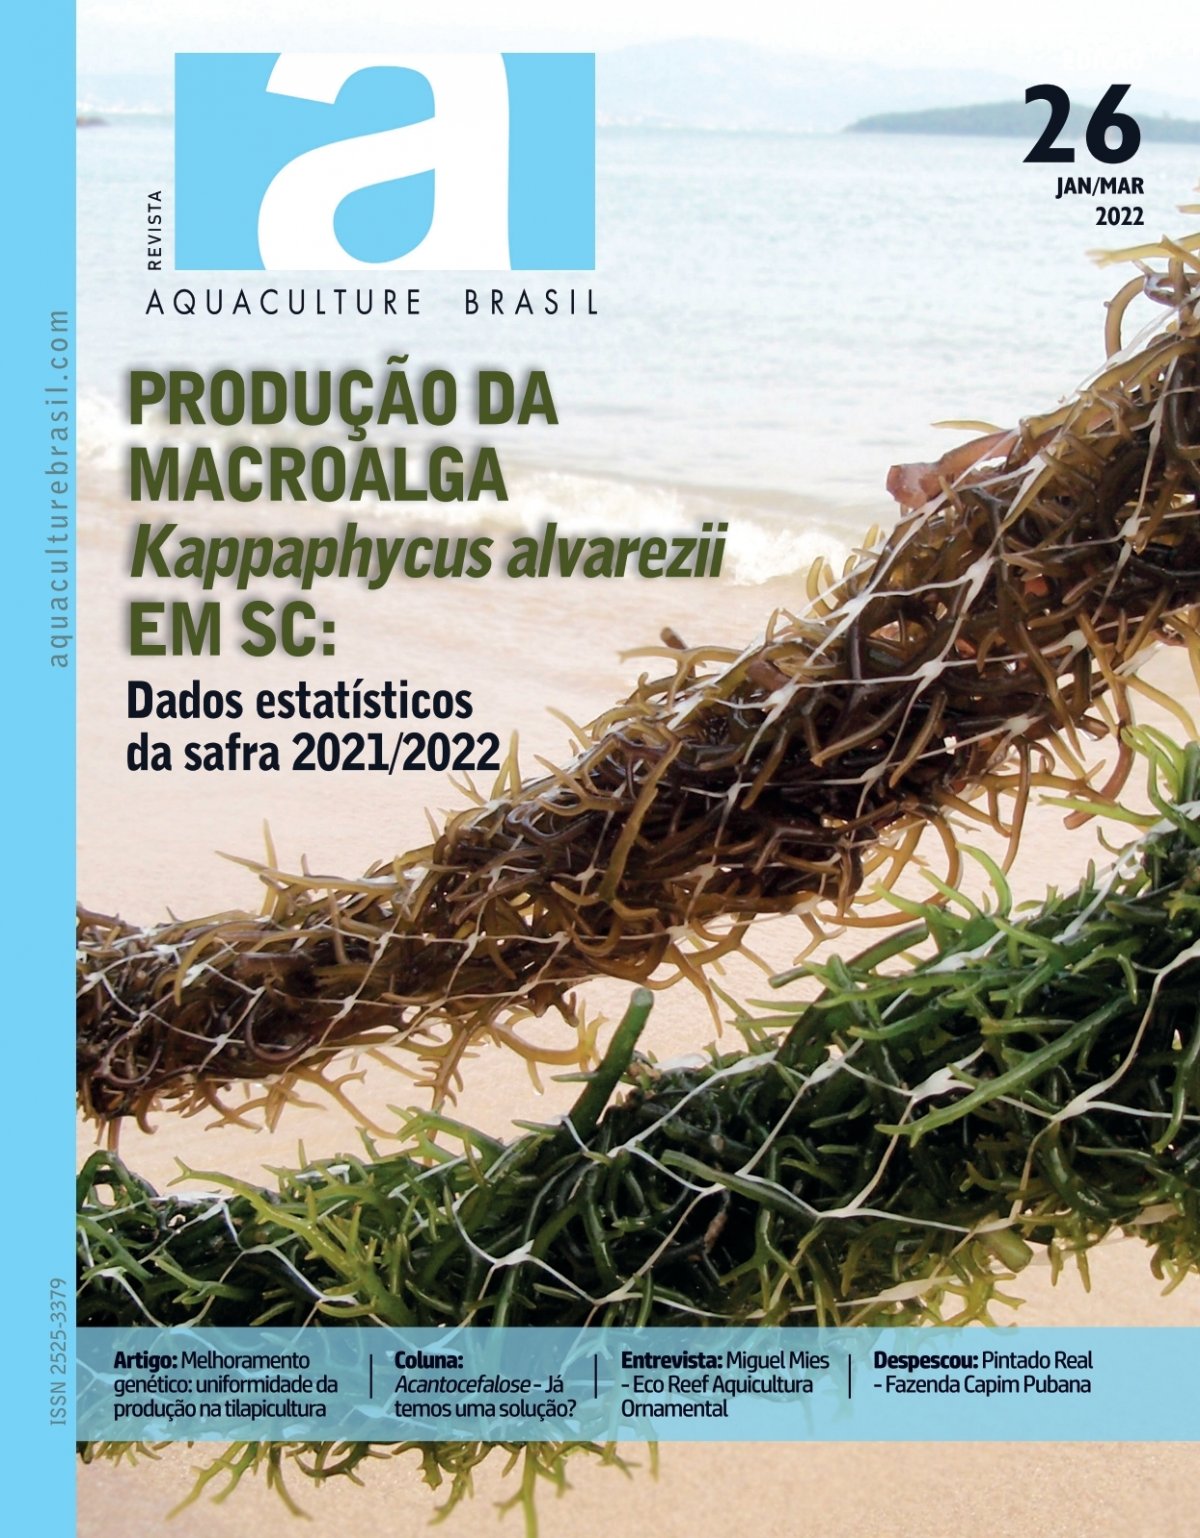 Teste identifica sexo de pirarucu e tambaqui para auxiliar na formação de  plantéis - Notícias - Aquaculture Brasil - O maior portal brasileiro sobre  aquicultura